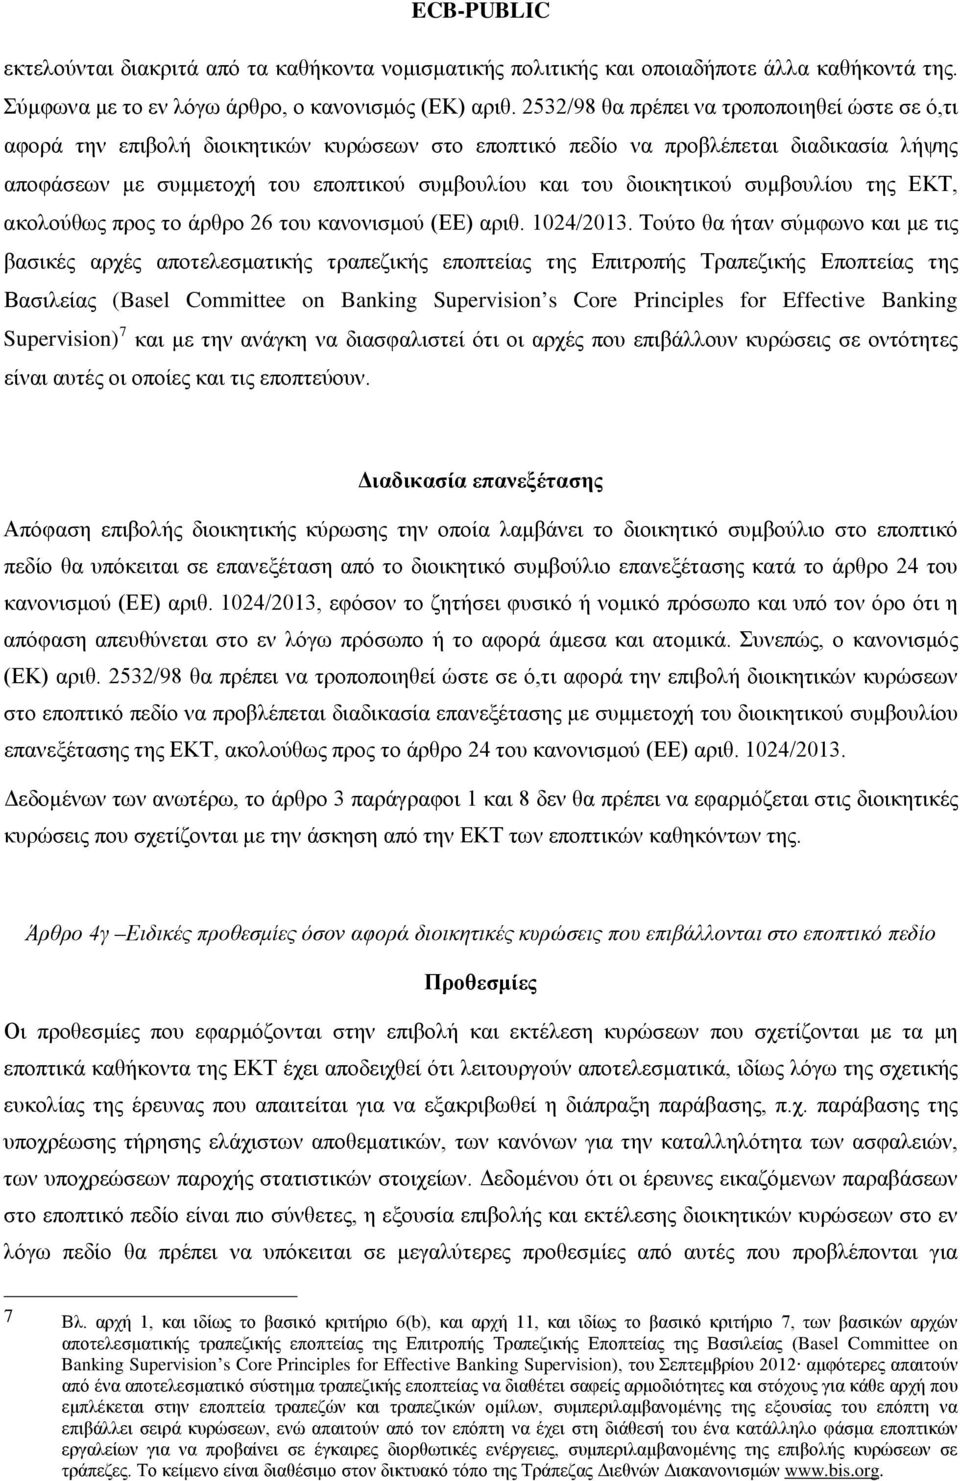 διοικητικού συμβουλίου της ΕΚΤ, ακολούθως προς το άρθρο 26 του κανονισμού (ΕΕ) αριθ. 1024/2013.